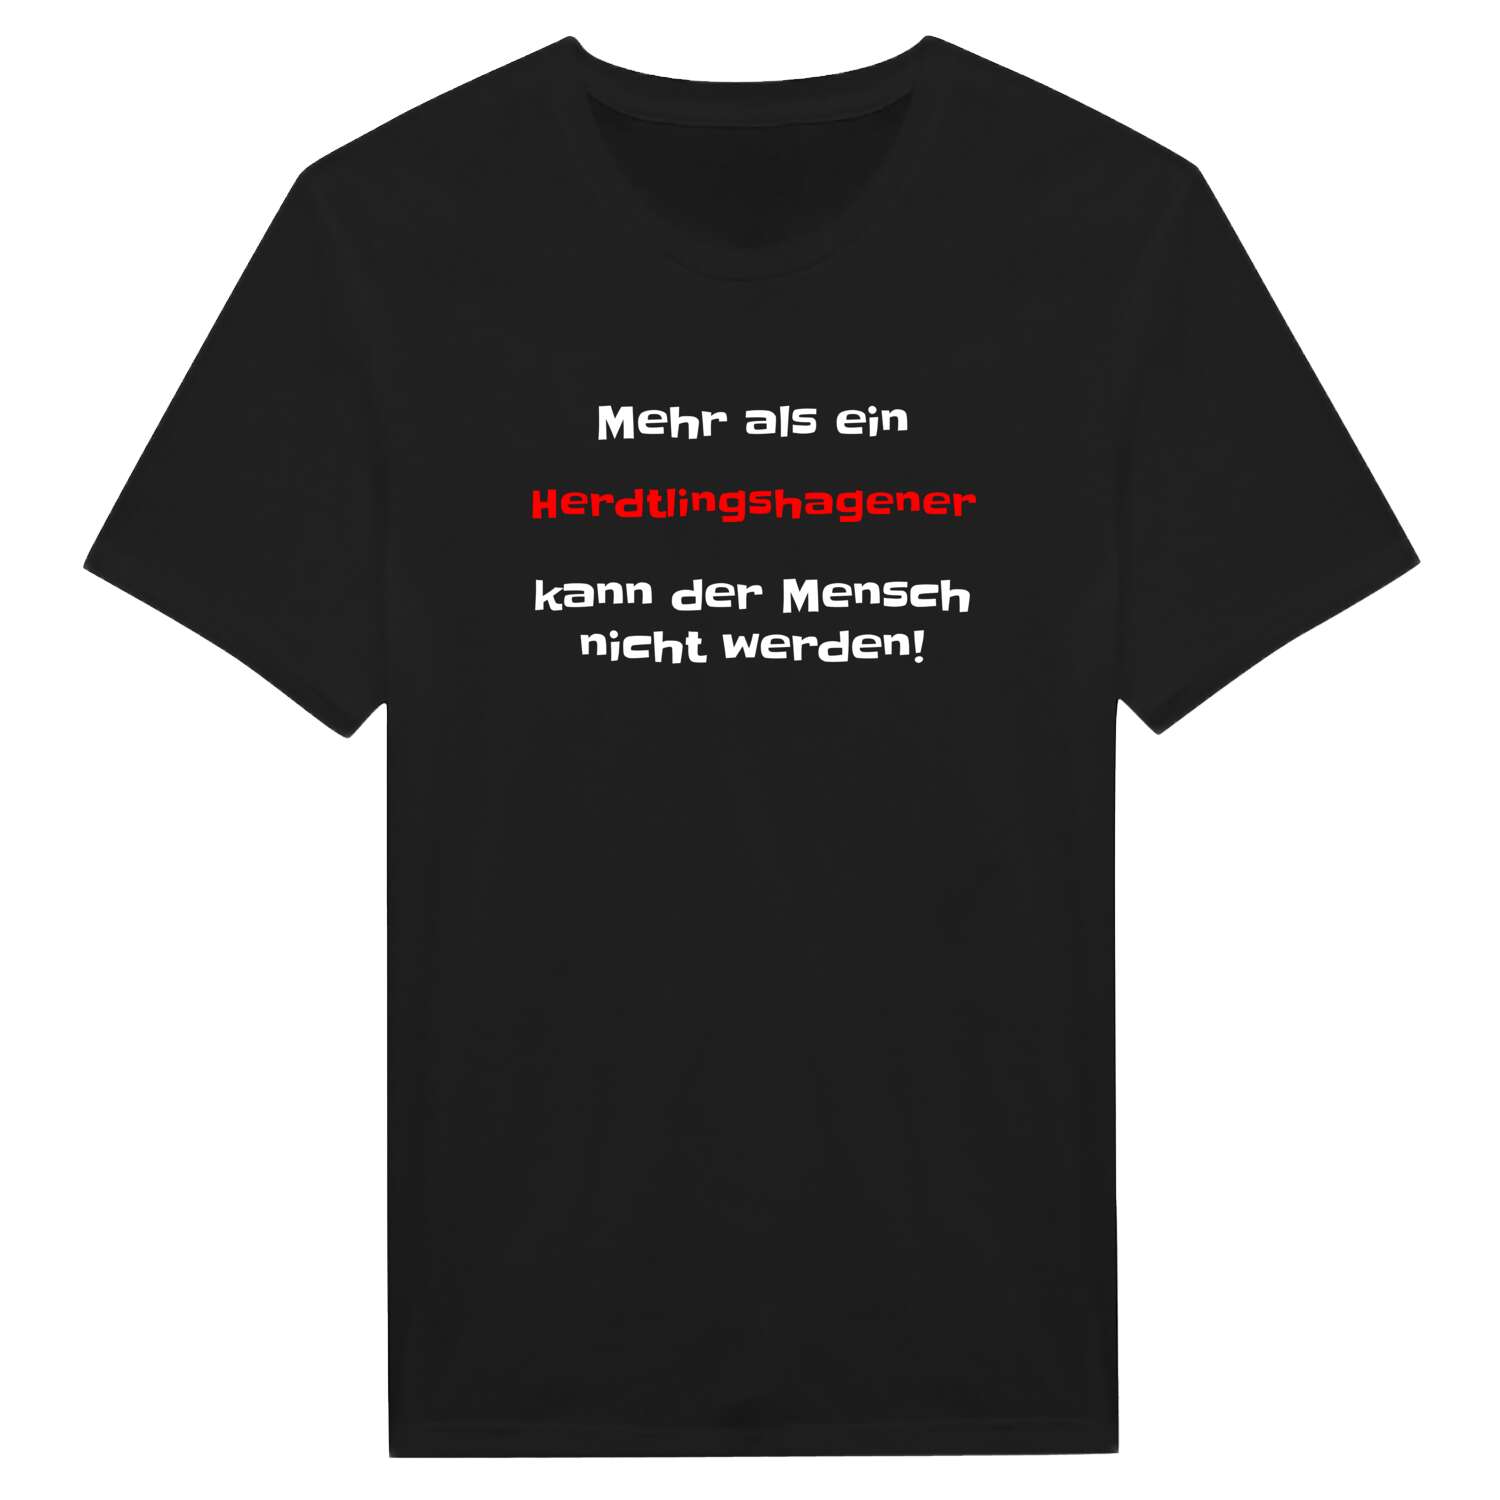 Herdtlingshagen T-Shirt »Mehr als ein«